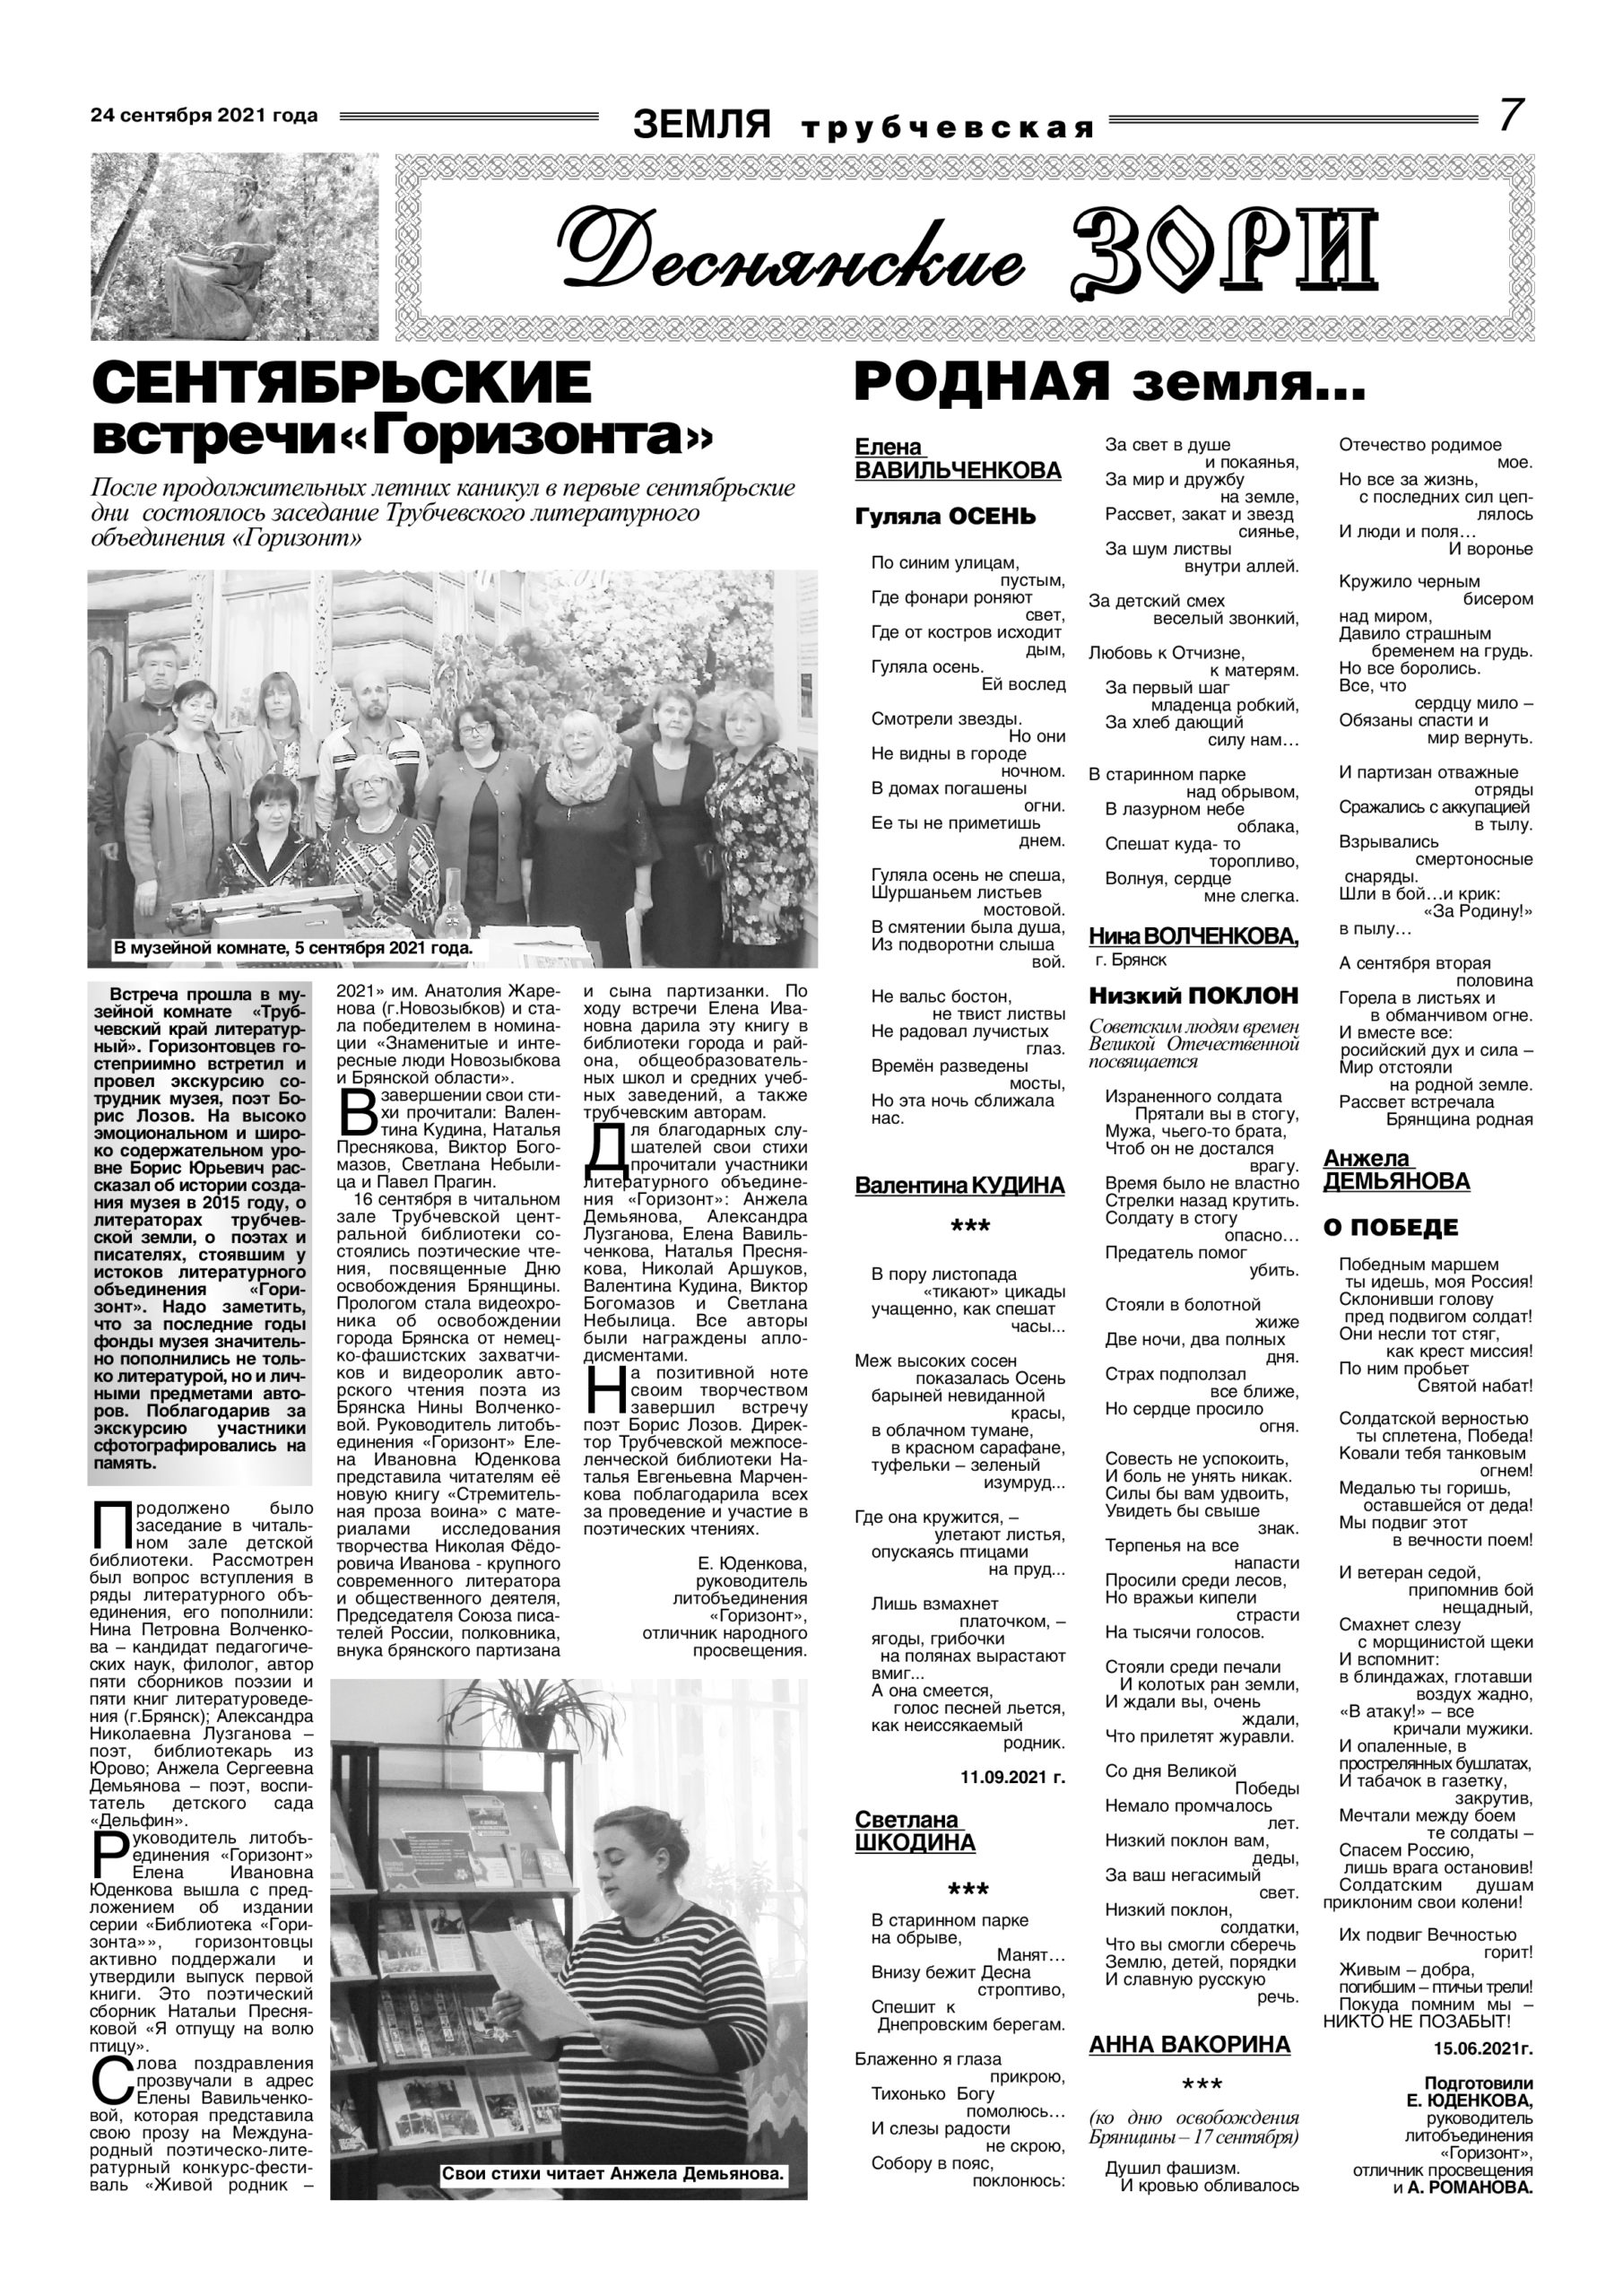 В газете «Земля Трубчевская» вышла новая литературная страница